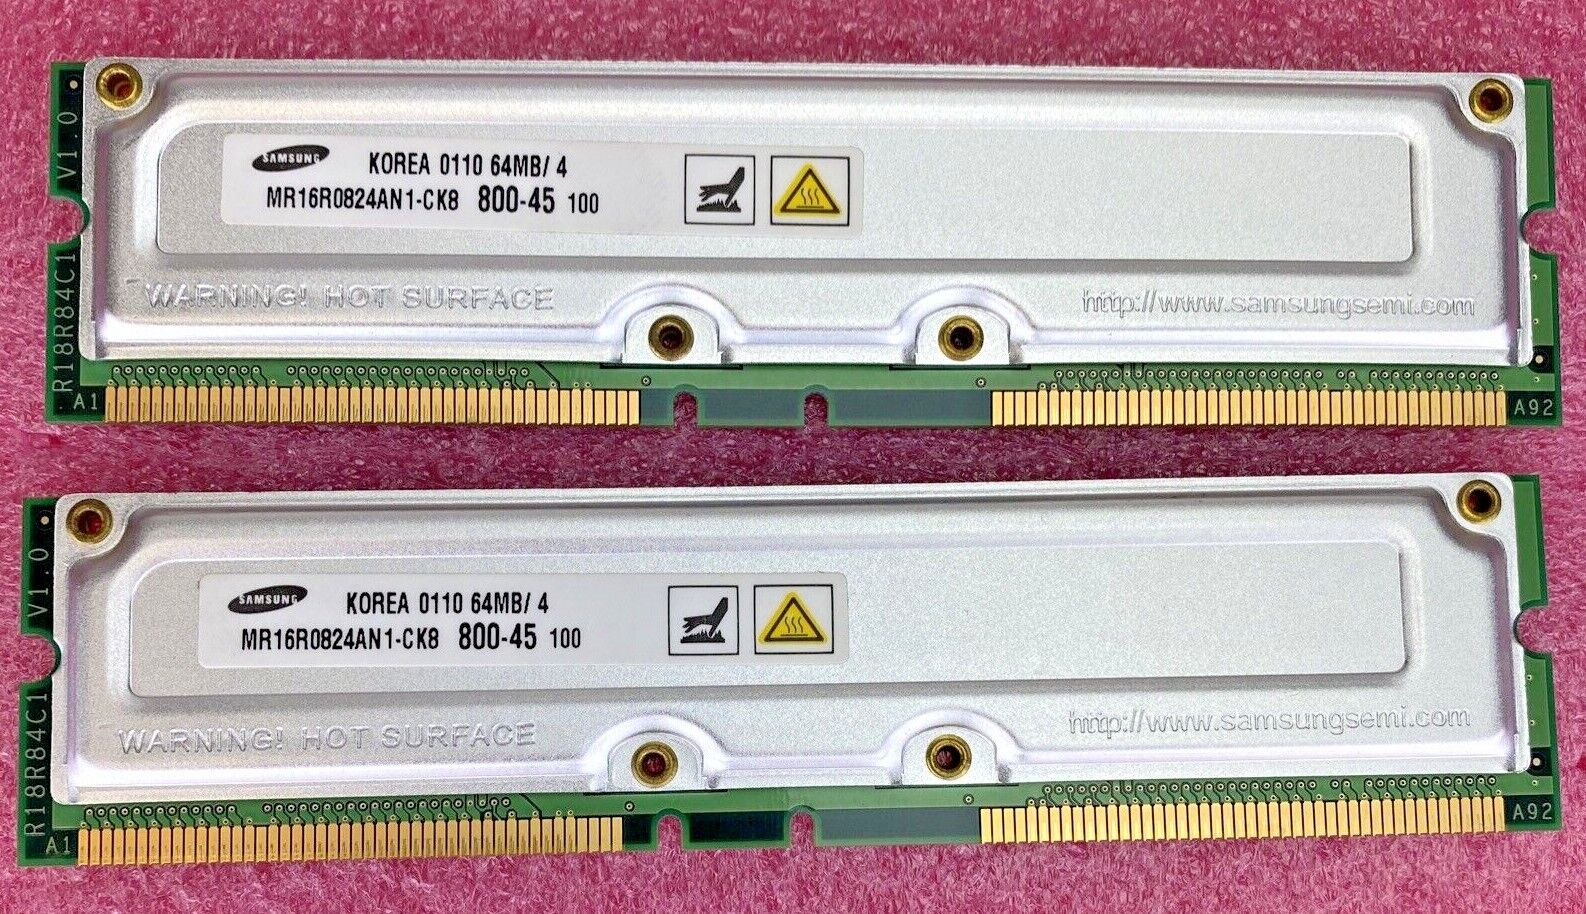 2x 64MB Samsung MR16R0824AN1-CK8IN 800-45 R18R84C1 V1.0 RAM memory